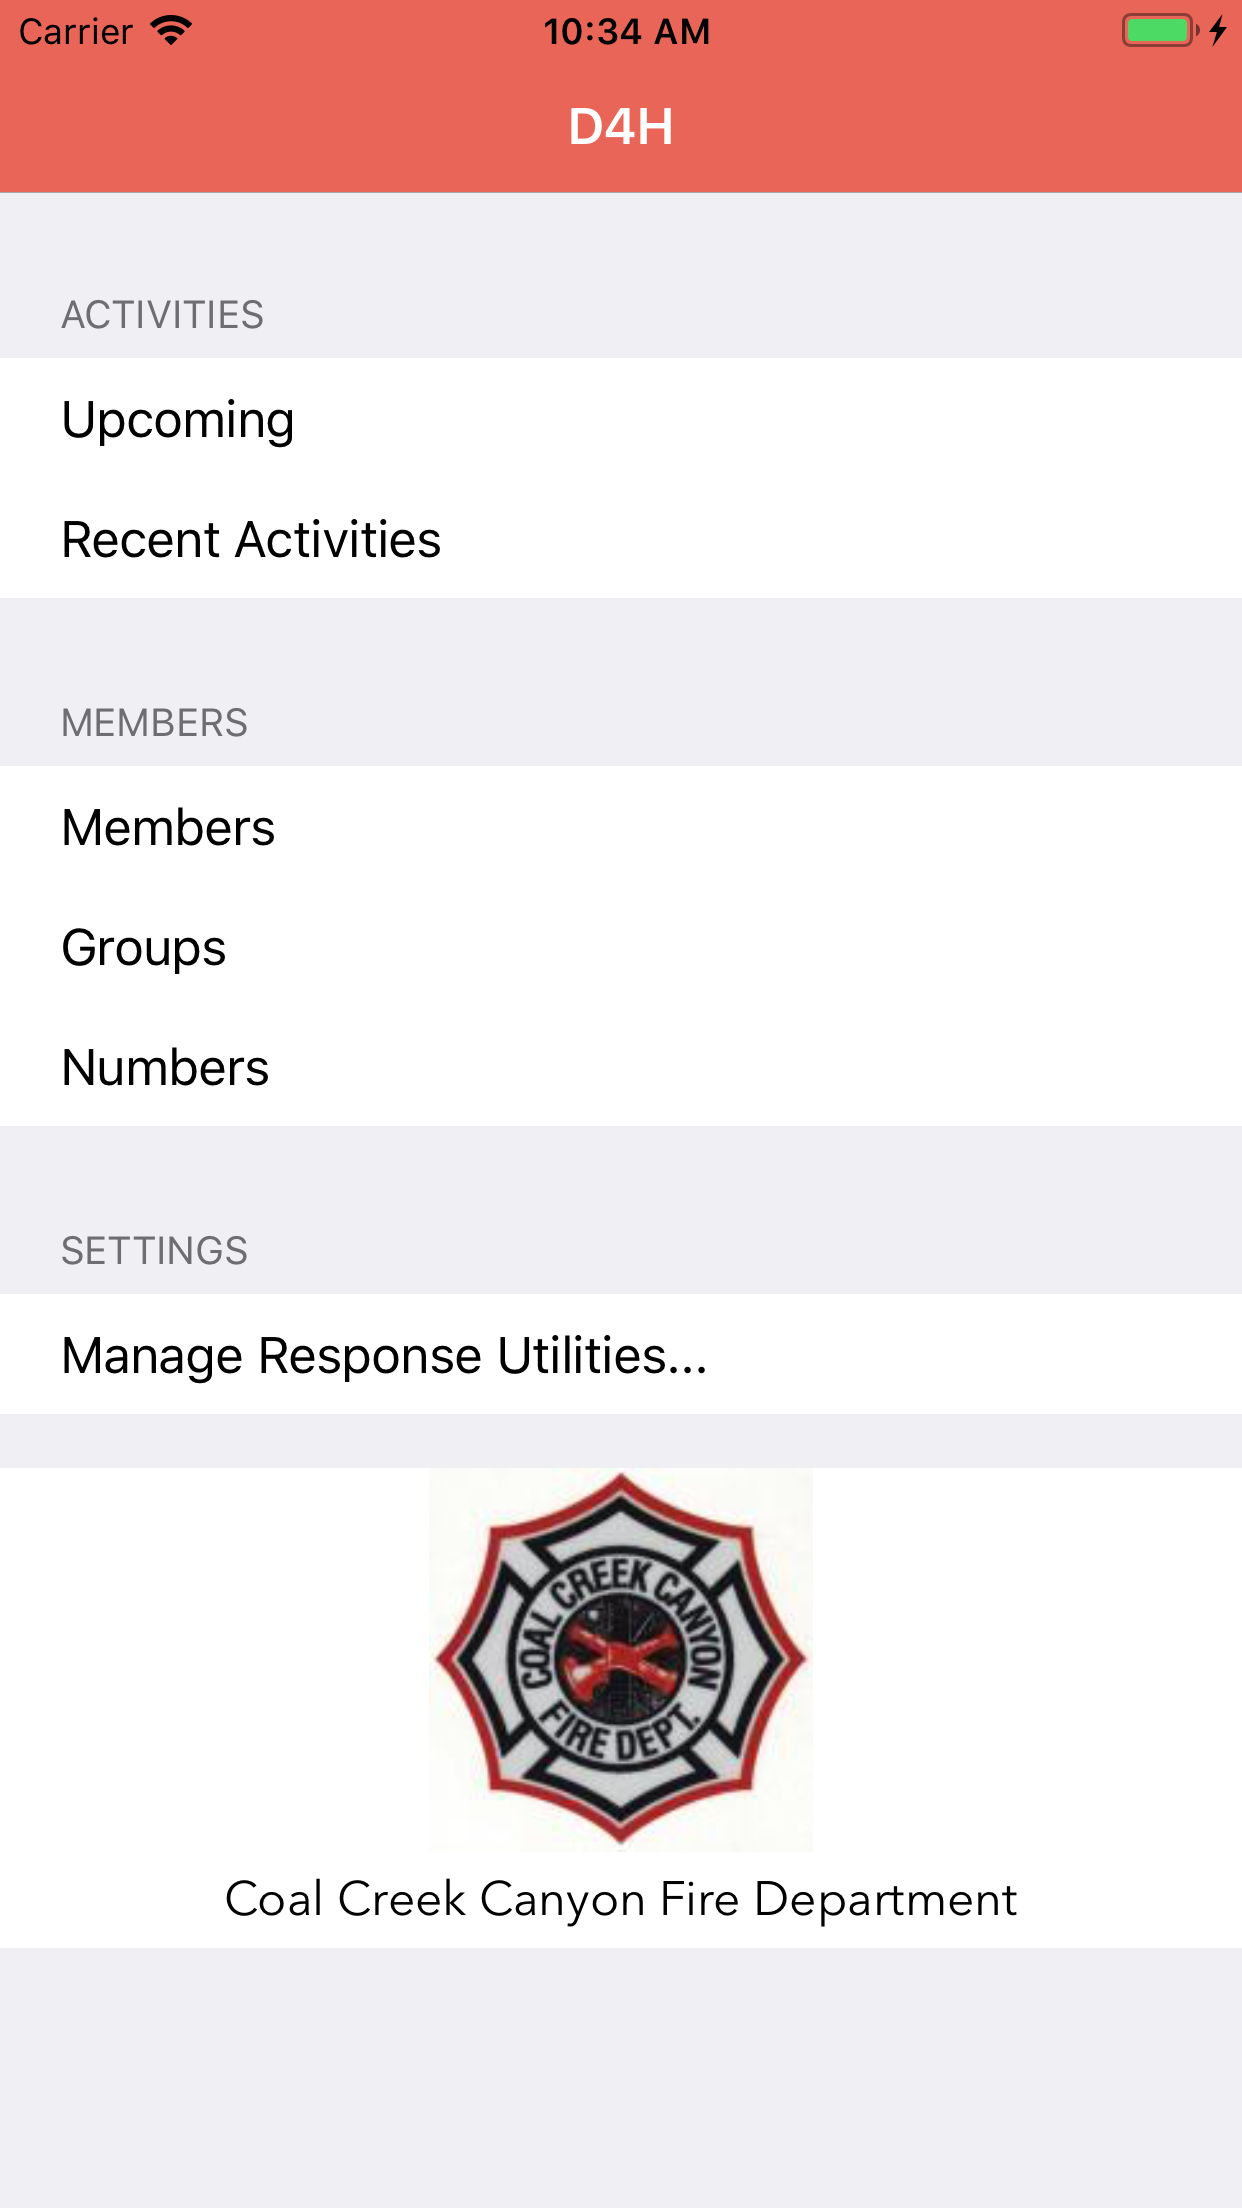 Main options / main menu for Response Utilities